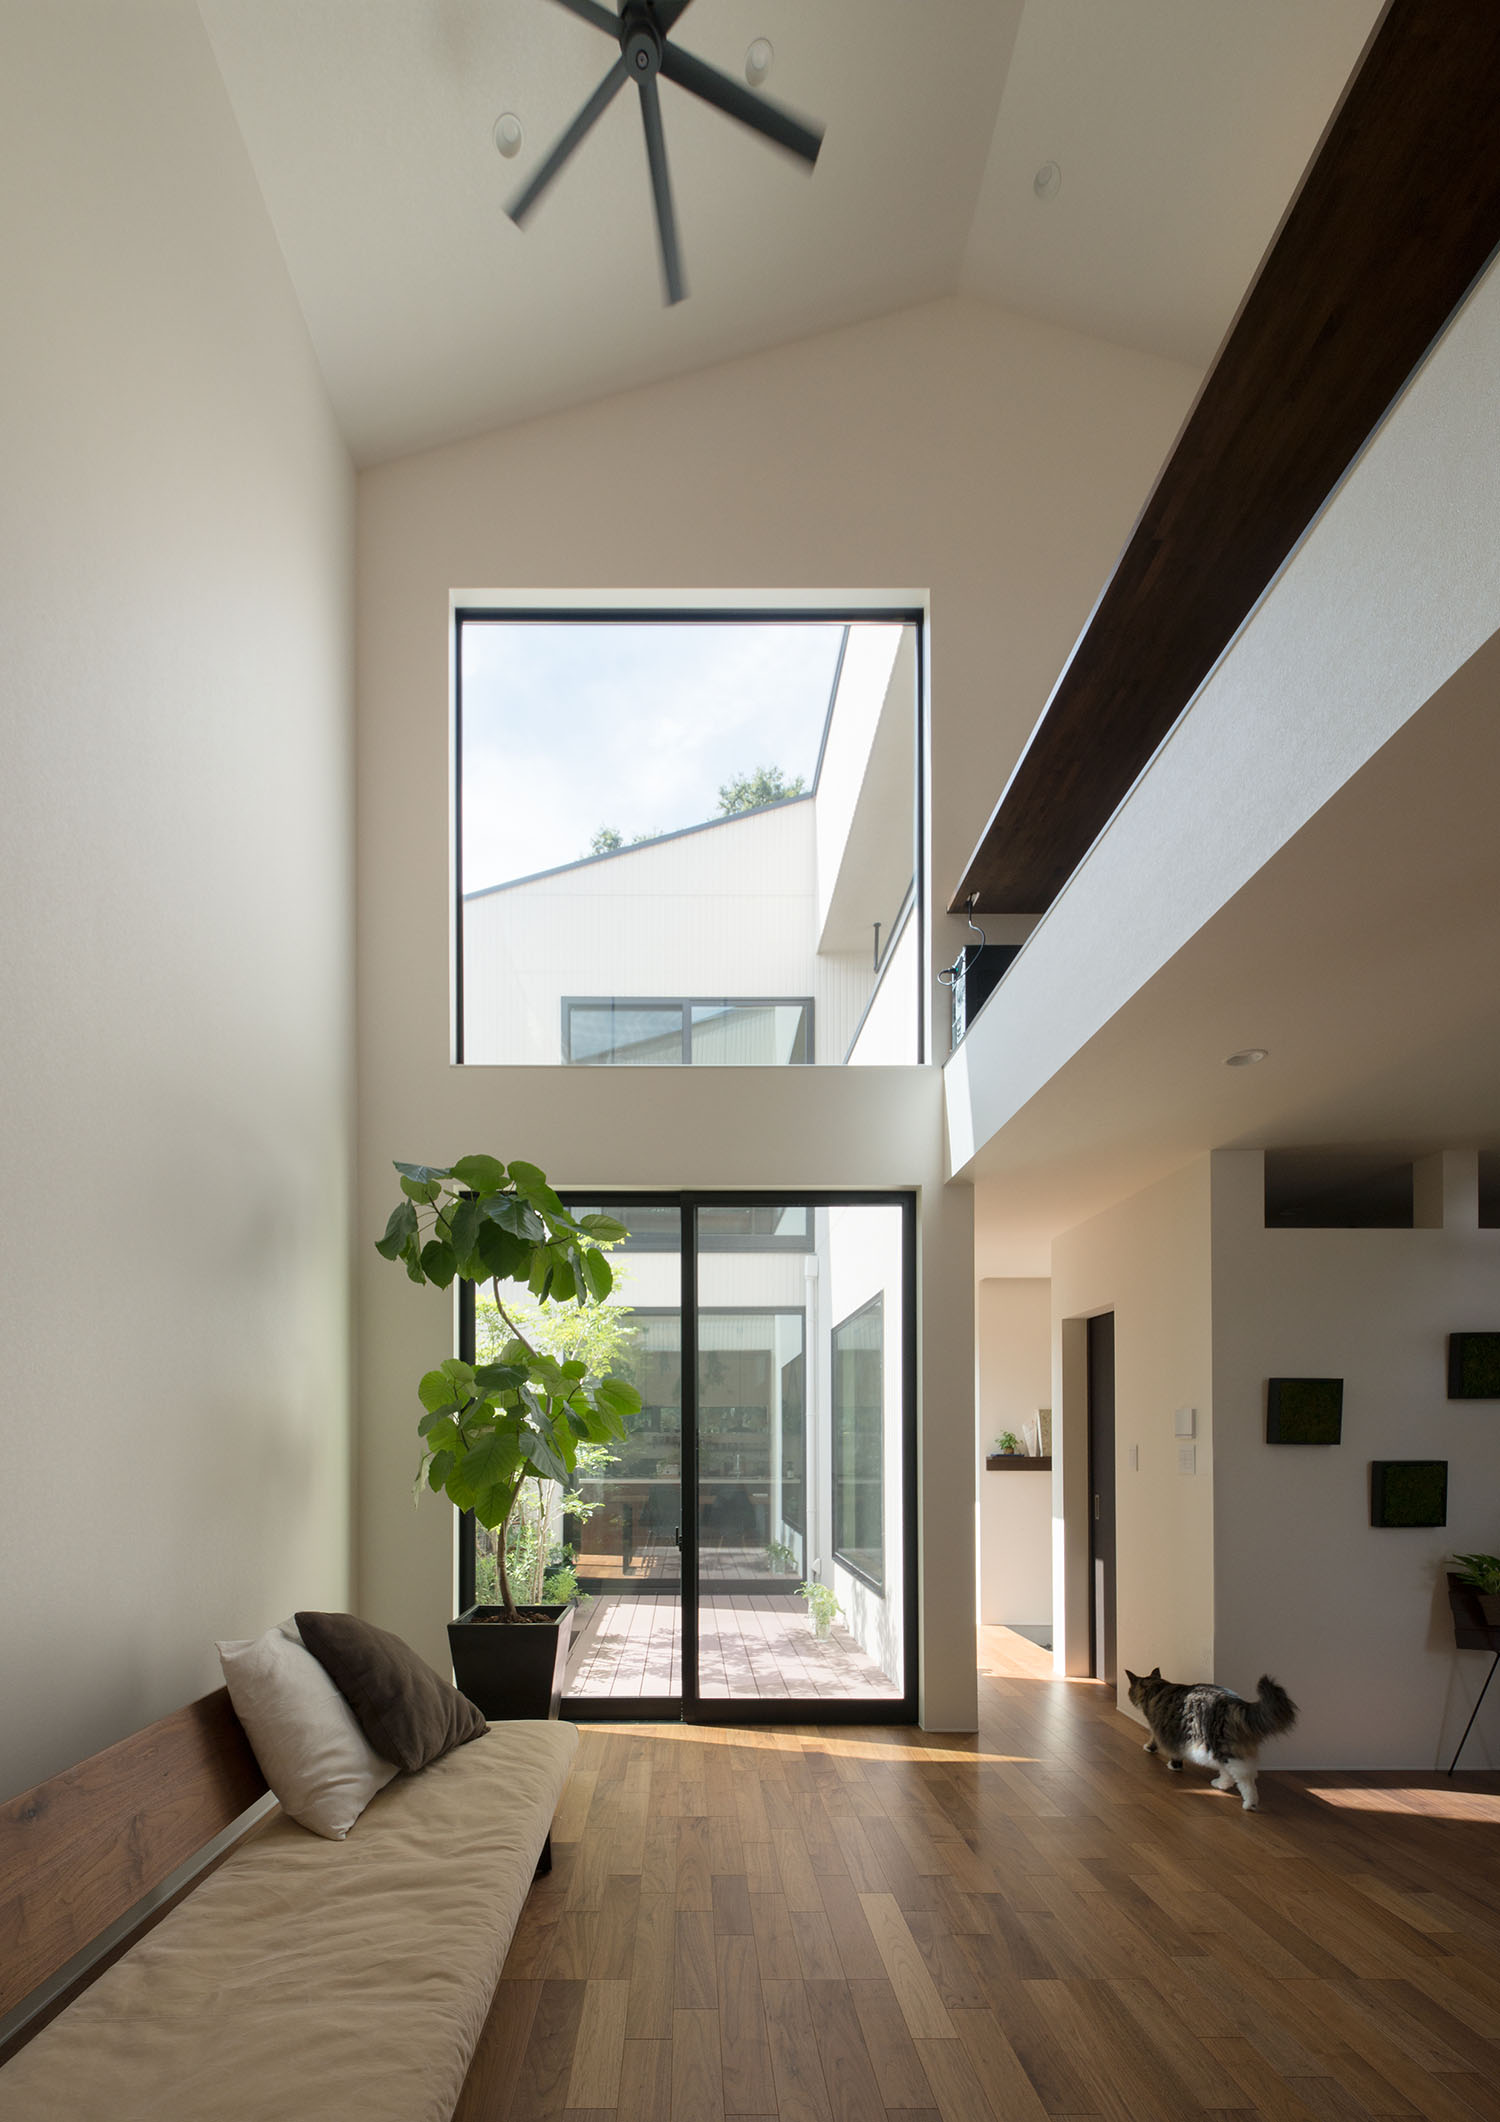 吹き抜けの上部まで窓が設けられた観葉植物のあるLDK・デザイン住宅